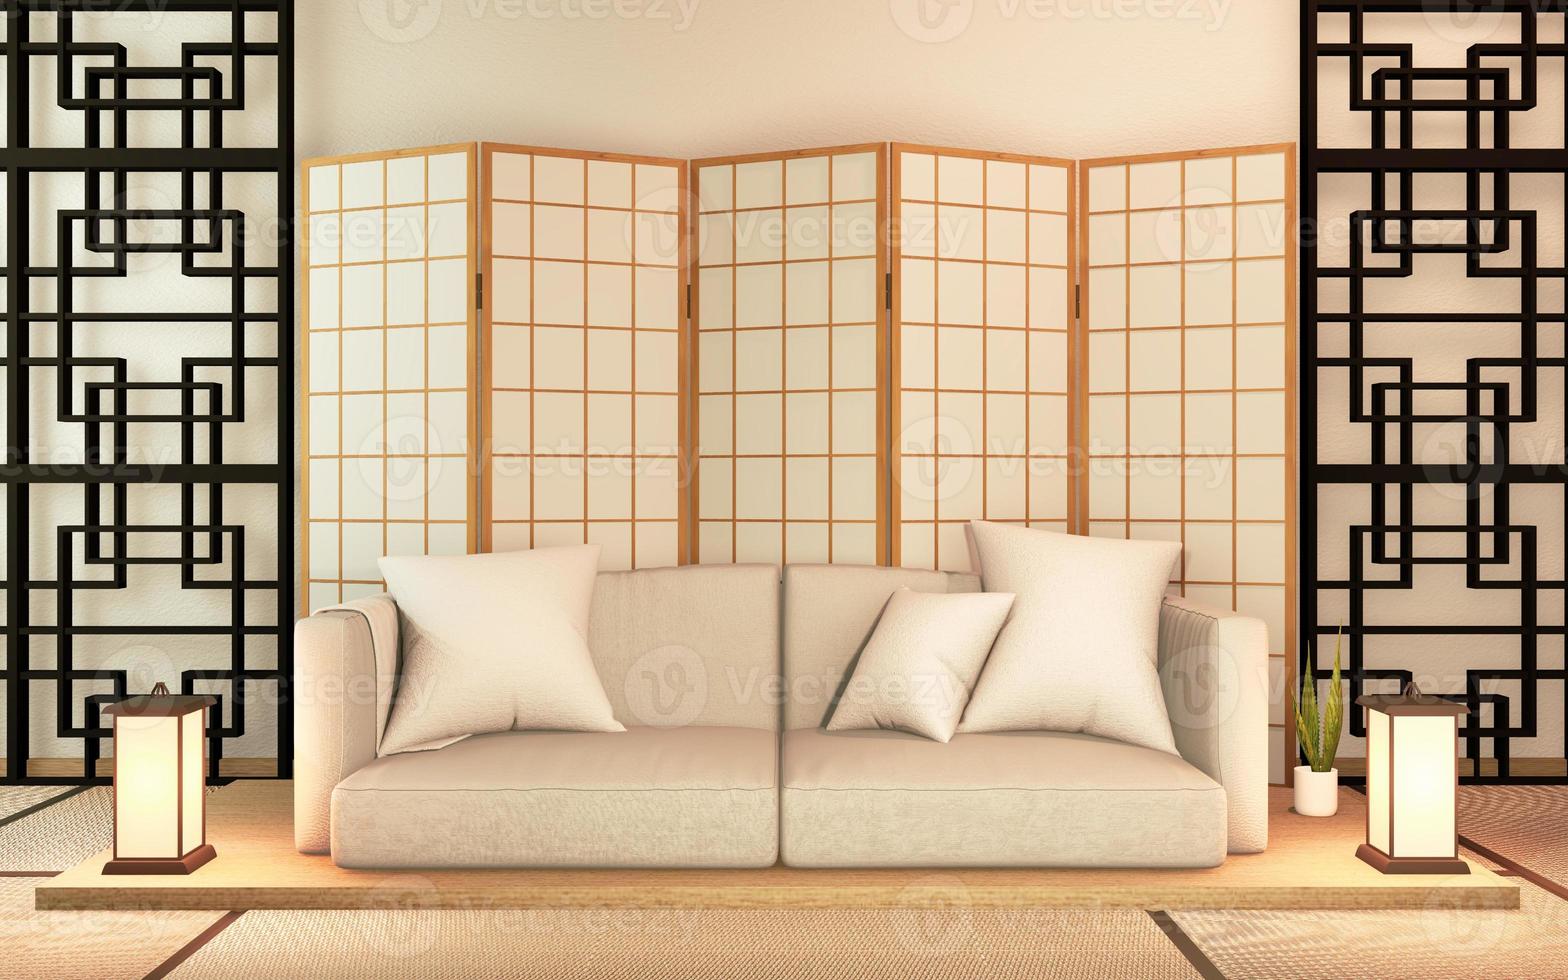 canapé en bois design japon, sur la chambre japon plancher en bois .3d rendu photo